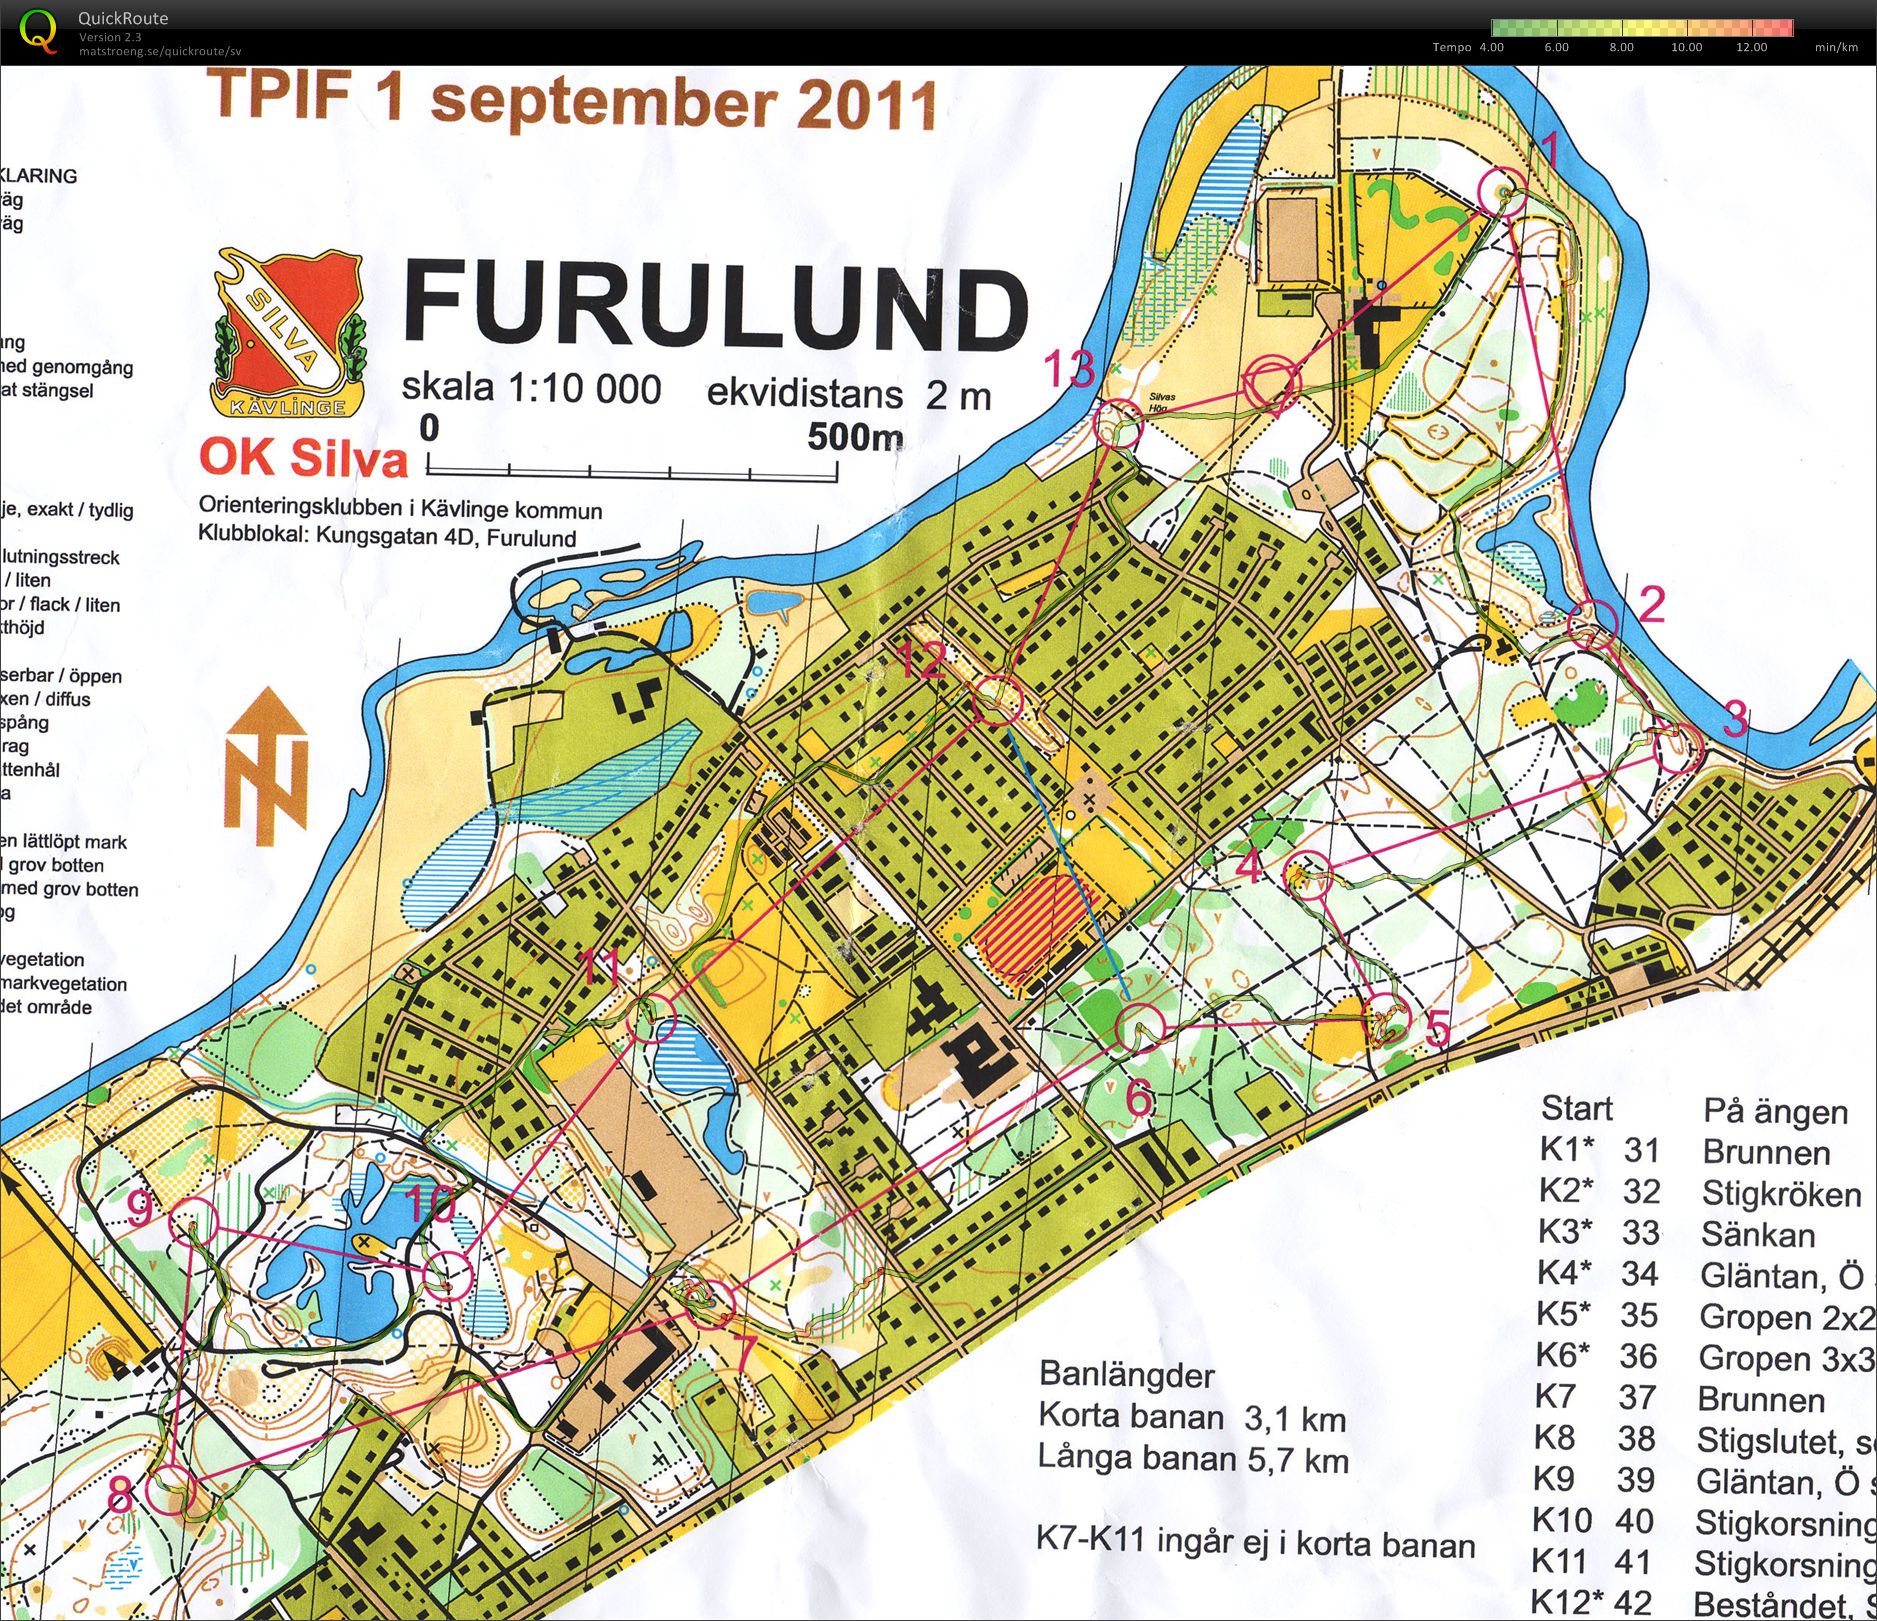 TetraPak OL Furulund (31.08.2011)